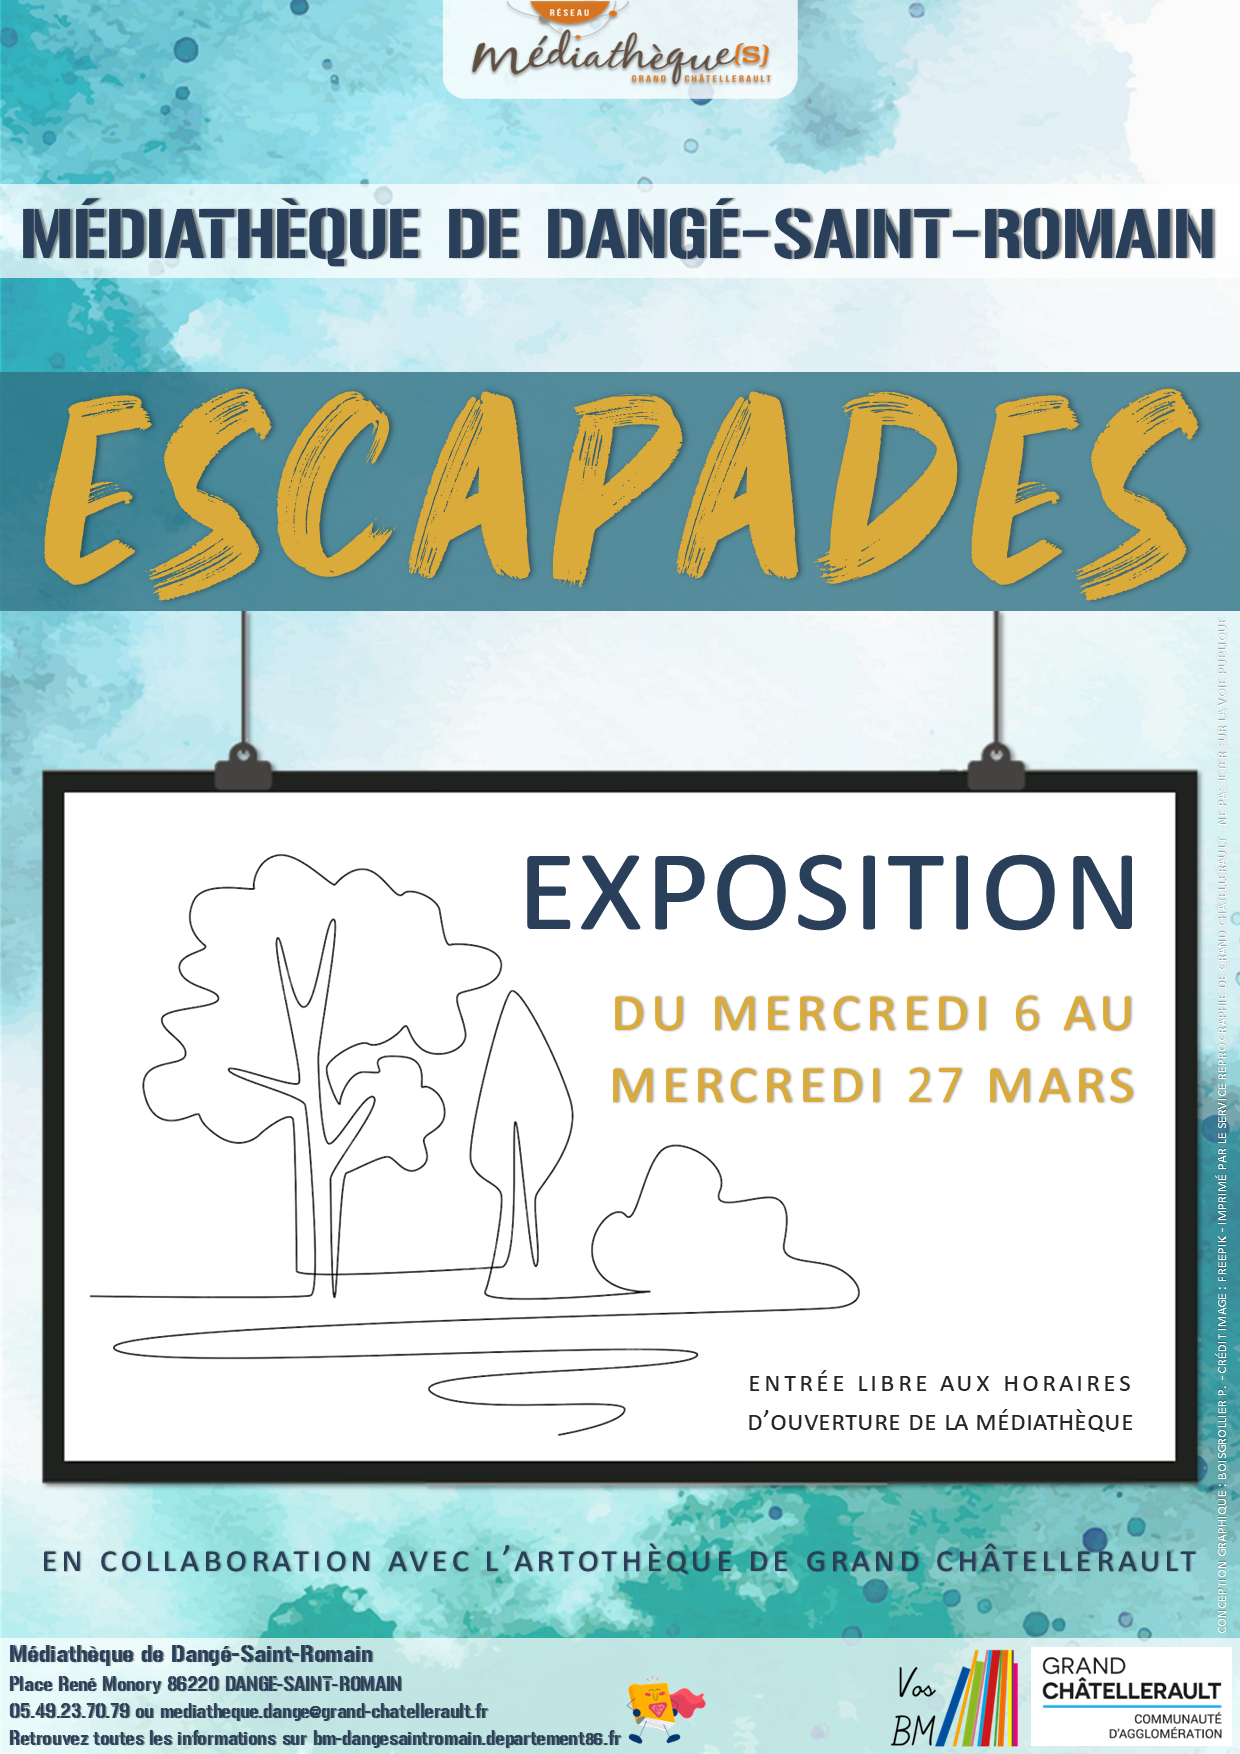 EXPO ESCAPADES DU 06/03 AU 27/03 @ MÉDIATHÈQUE